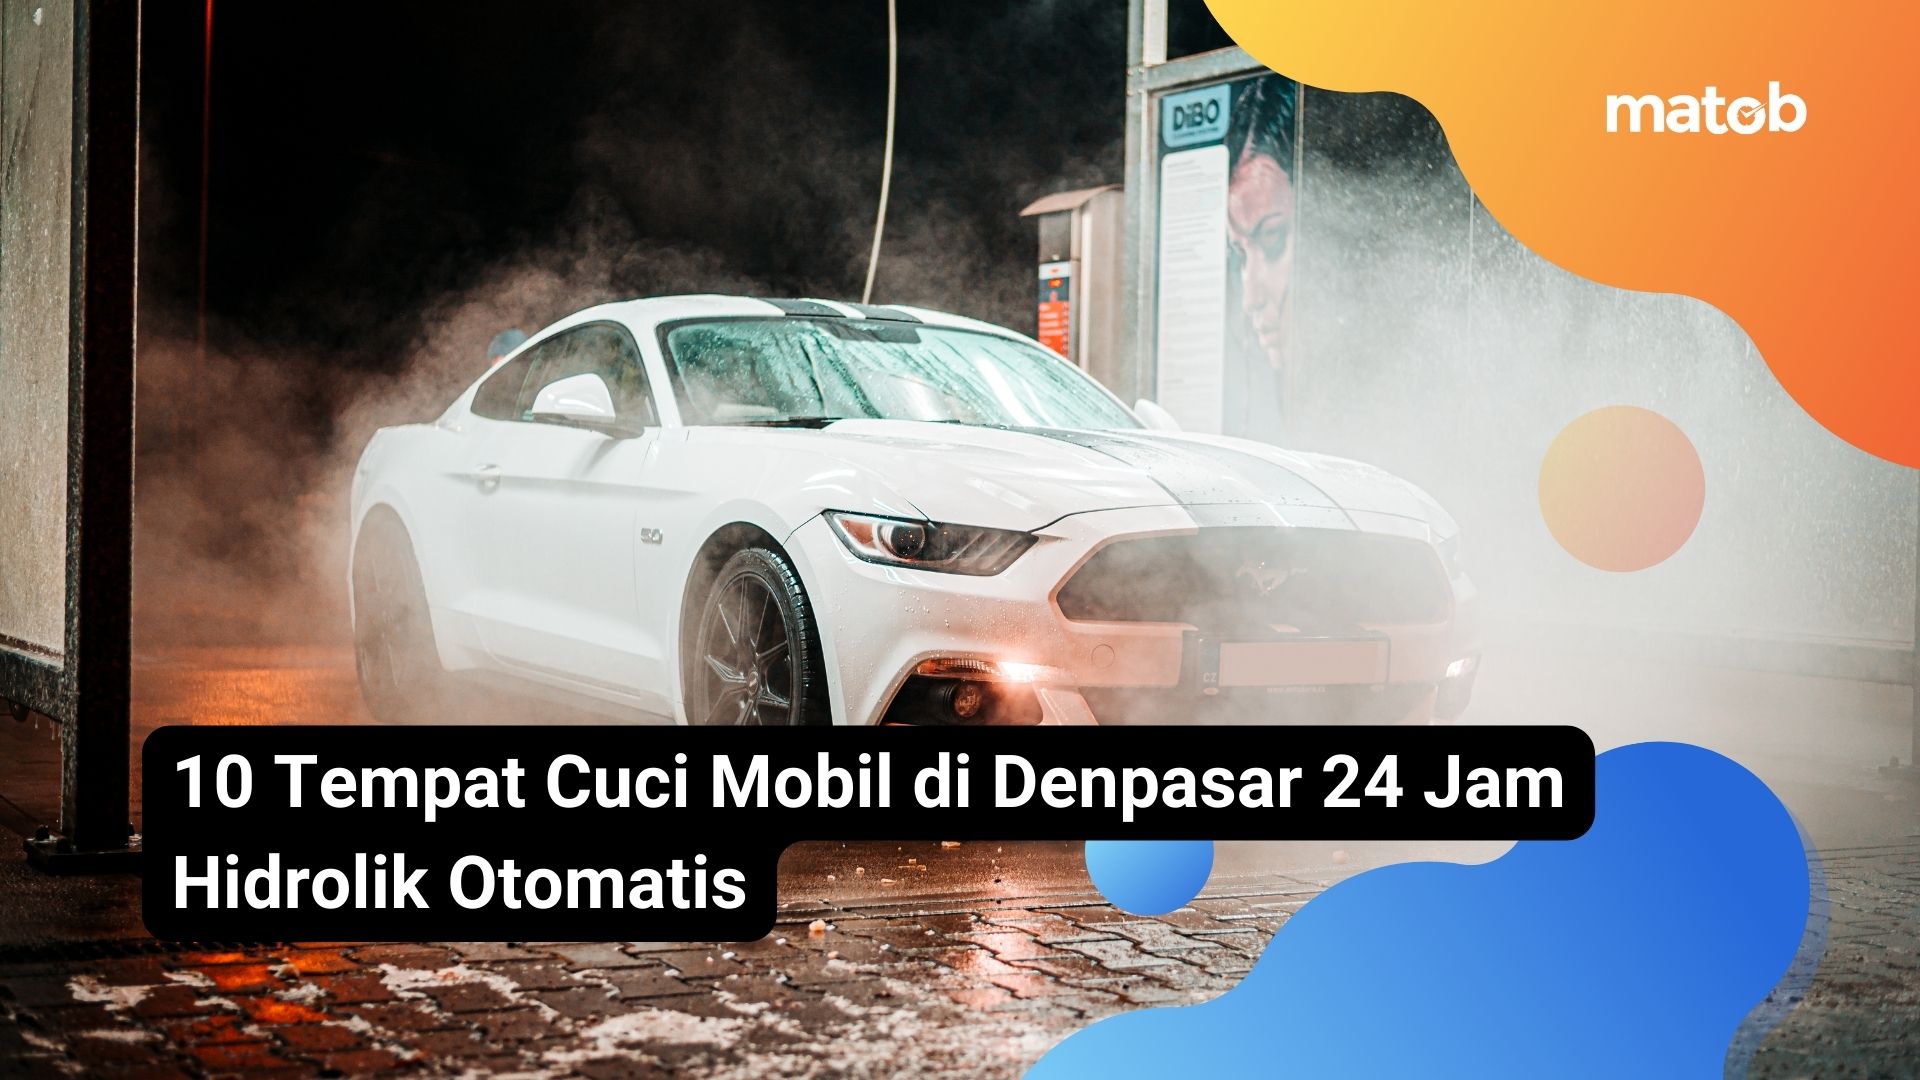 10 Tempat Cuci Mobil di Denpasar 24 Jam Hidrolik Otomatis